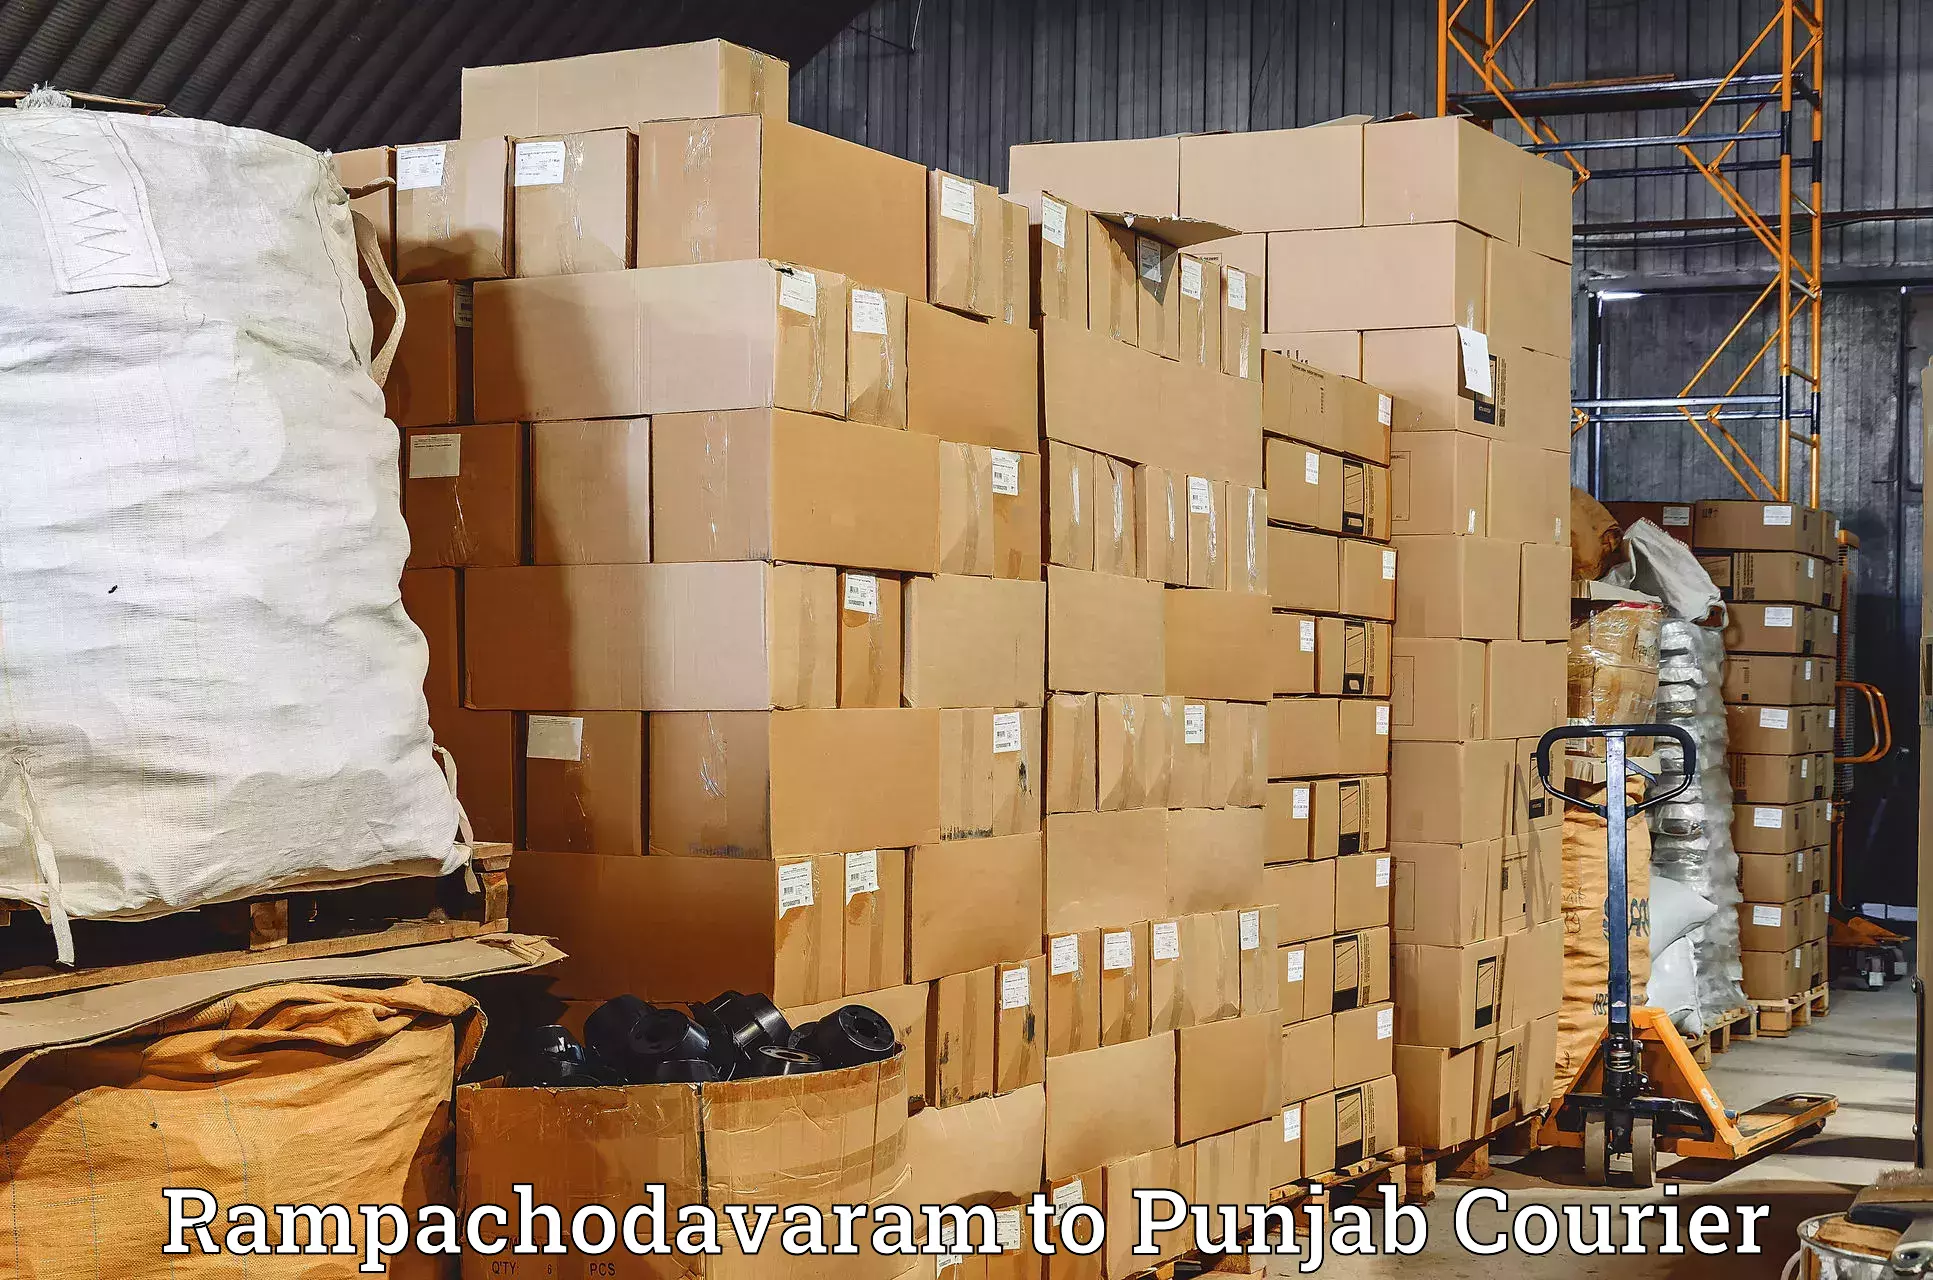 Global freight services Rampachodavaram to Nawanshahr